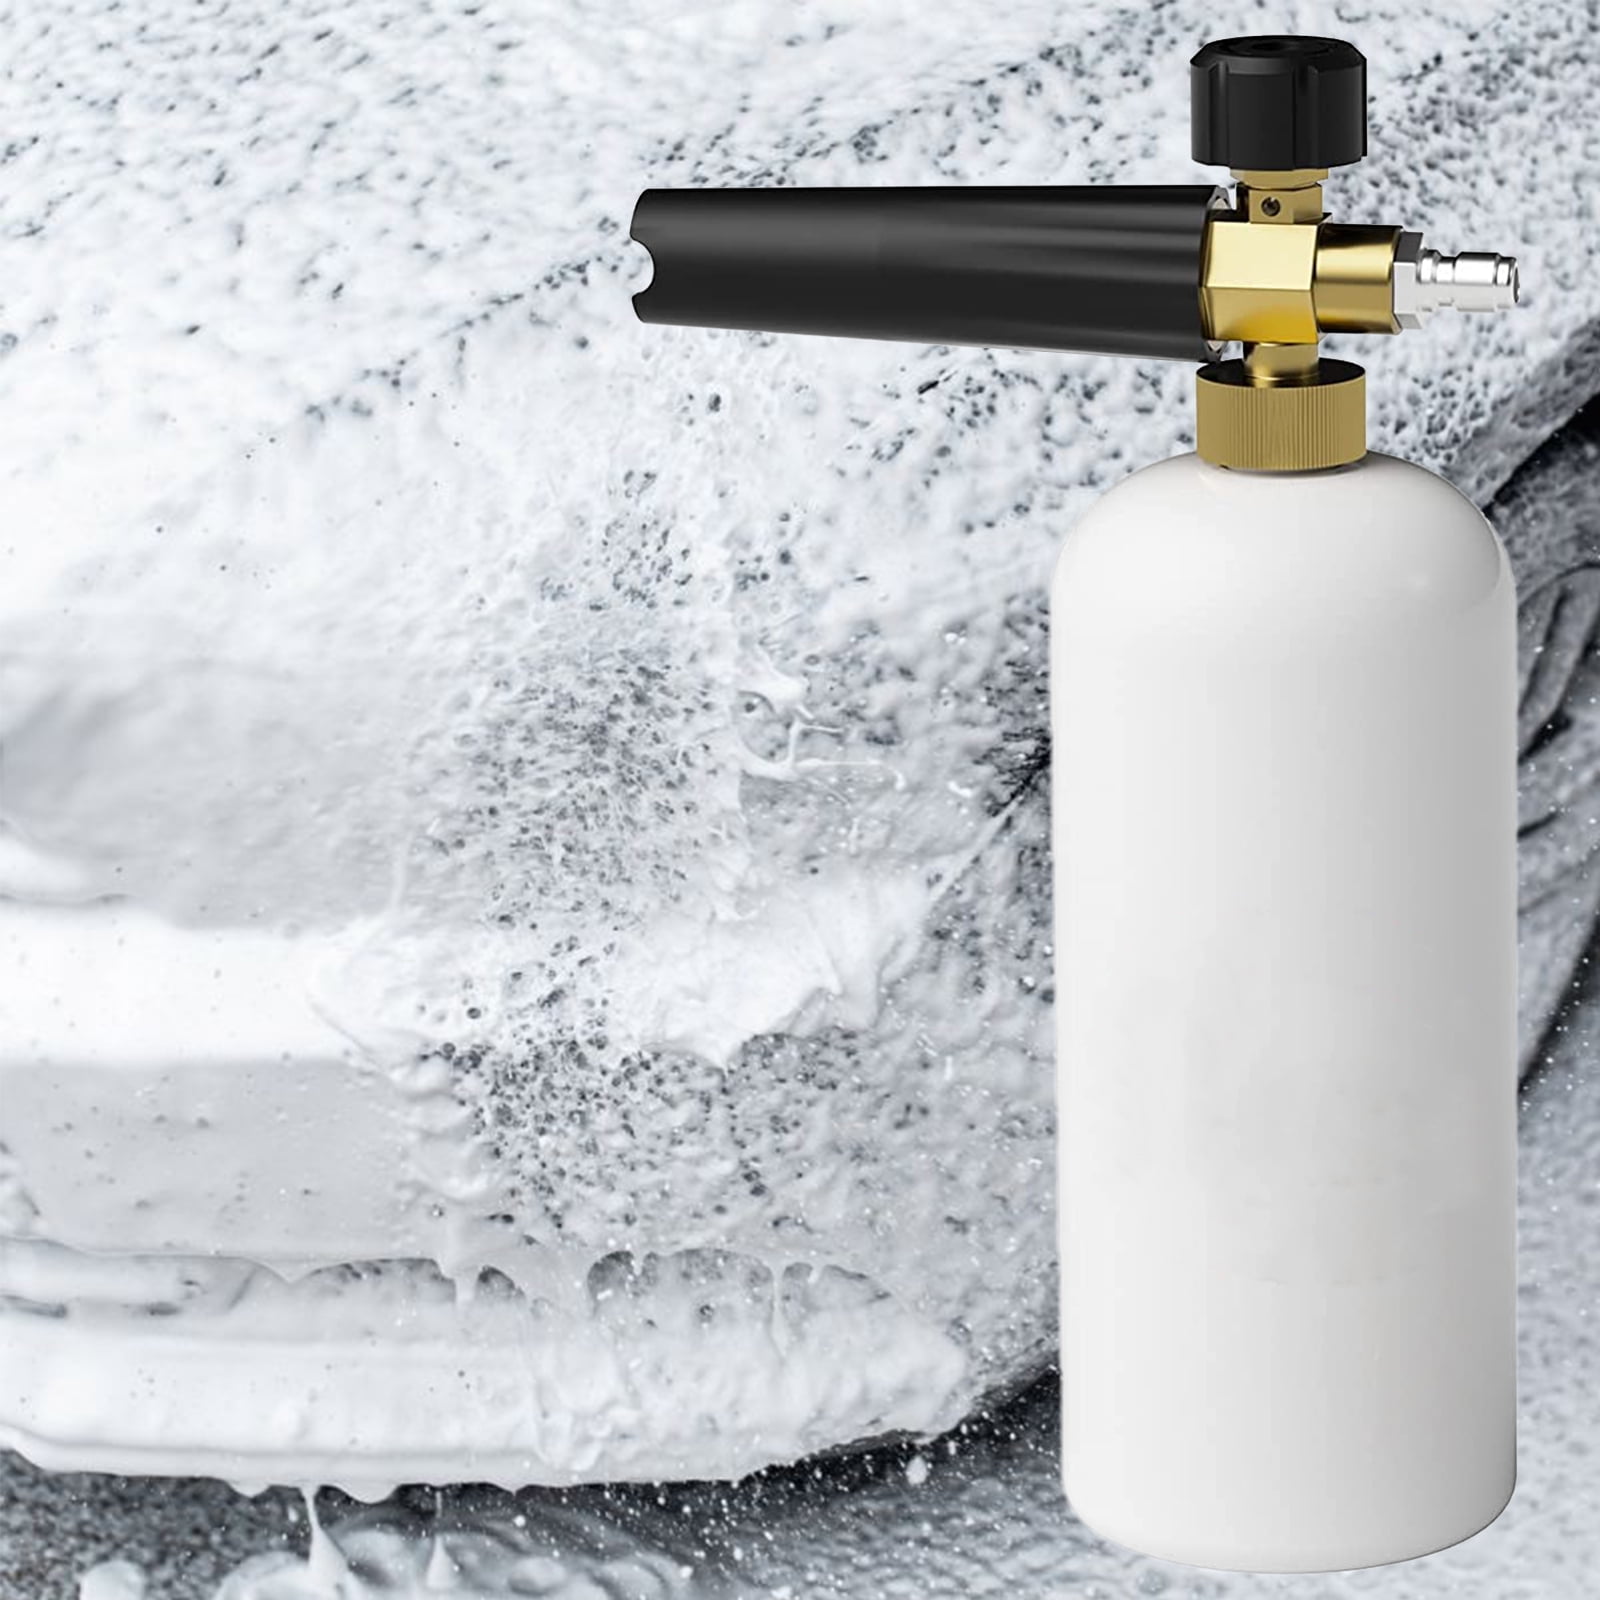  Car Wash Foam Sprayer, 0.4 Gallon Pump Sprayer with